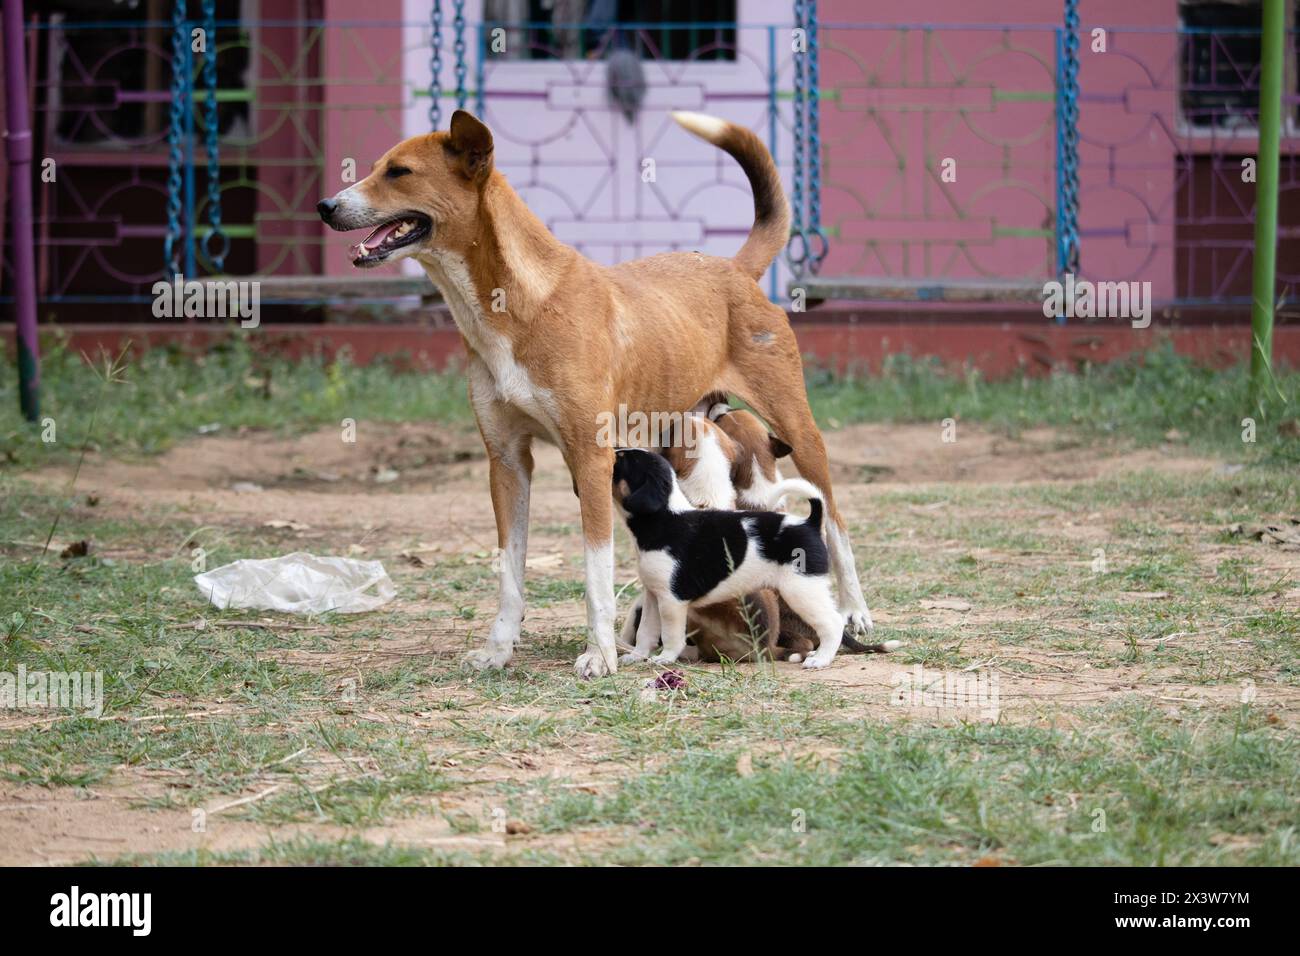 Chien mère de race indienne nourrissant ses chiots avec du lait sur un sol Banque D'Images